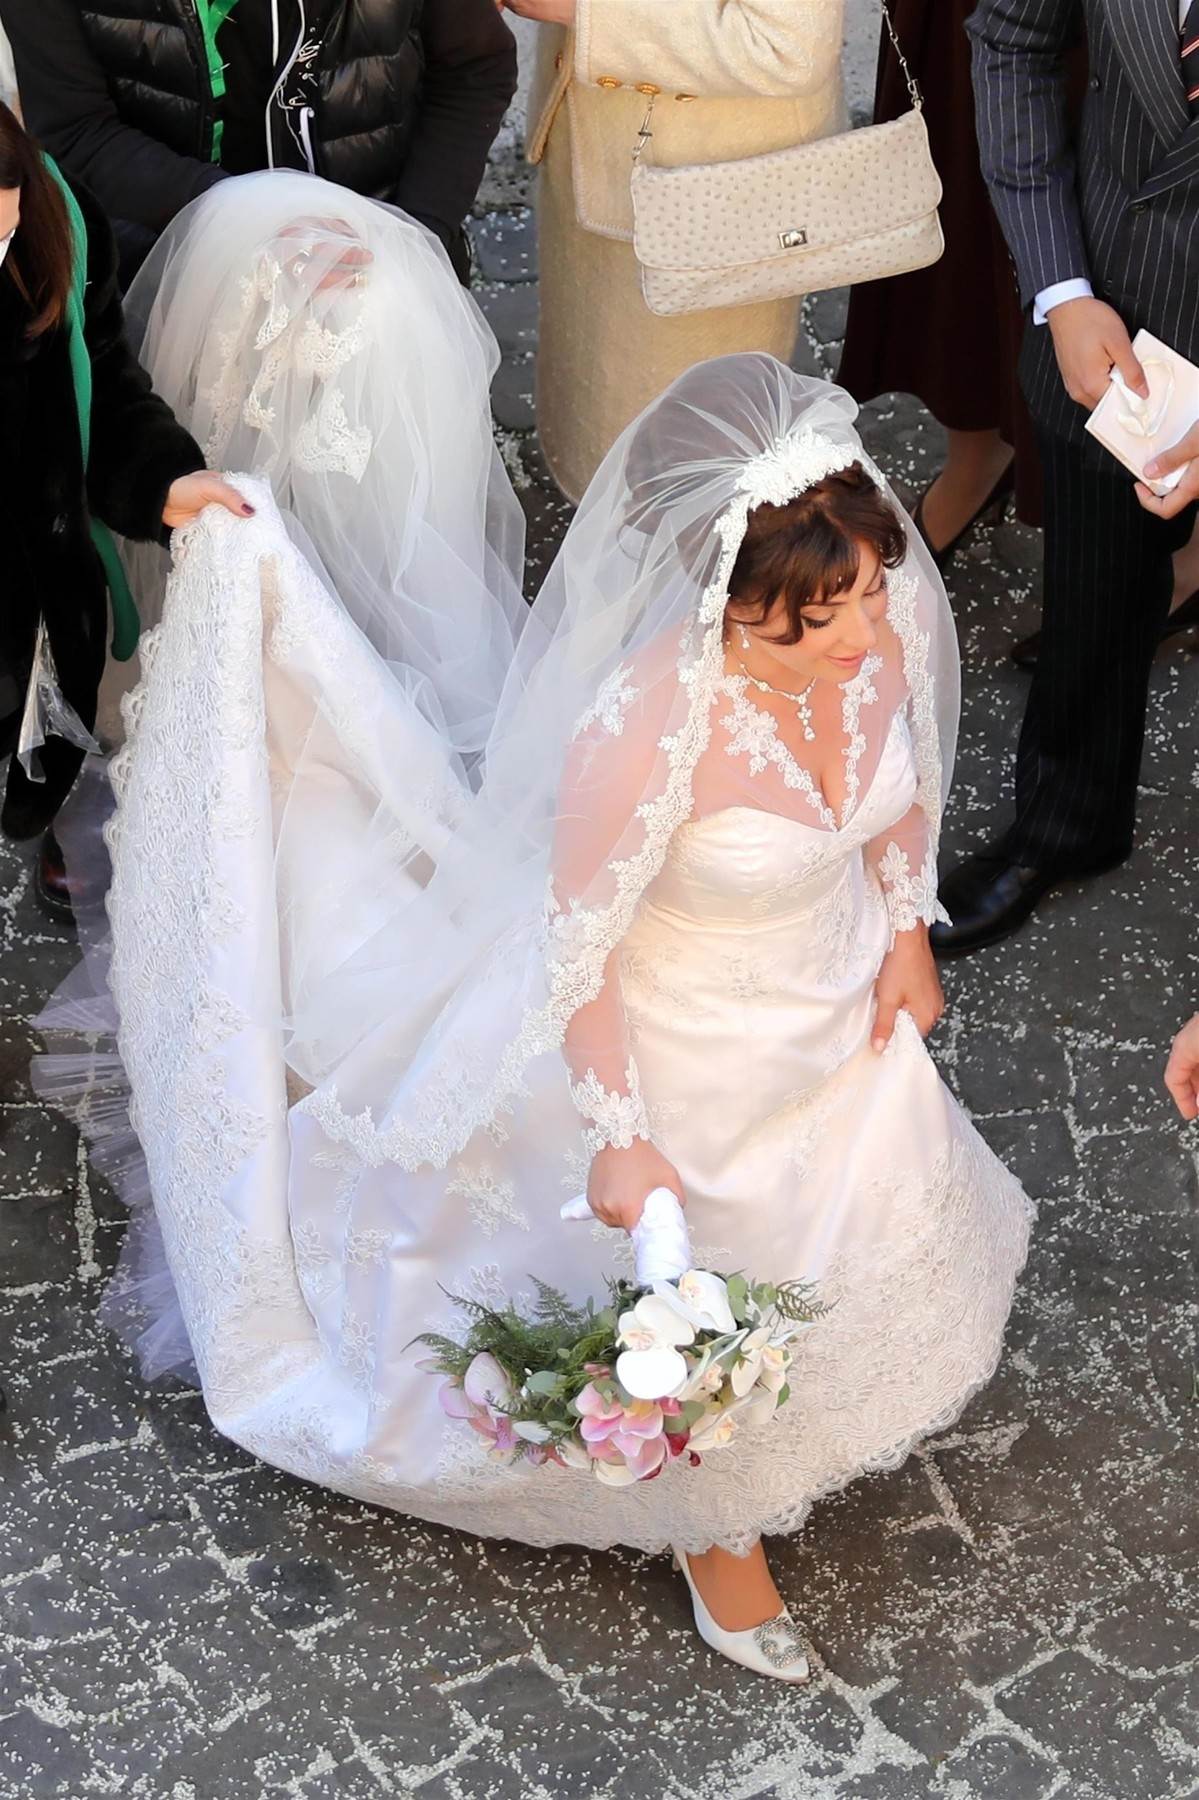 LADY GAGA PRED OLTAROM 'Ne mogu vjerovati da sam se udala'